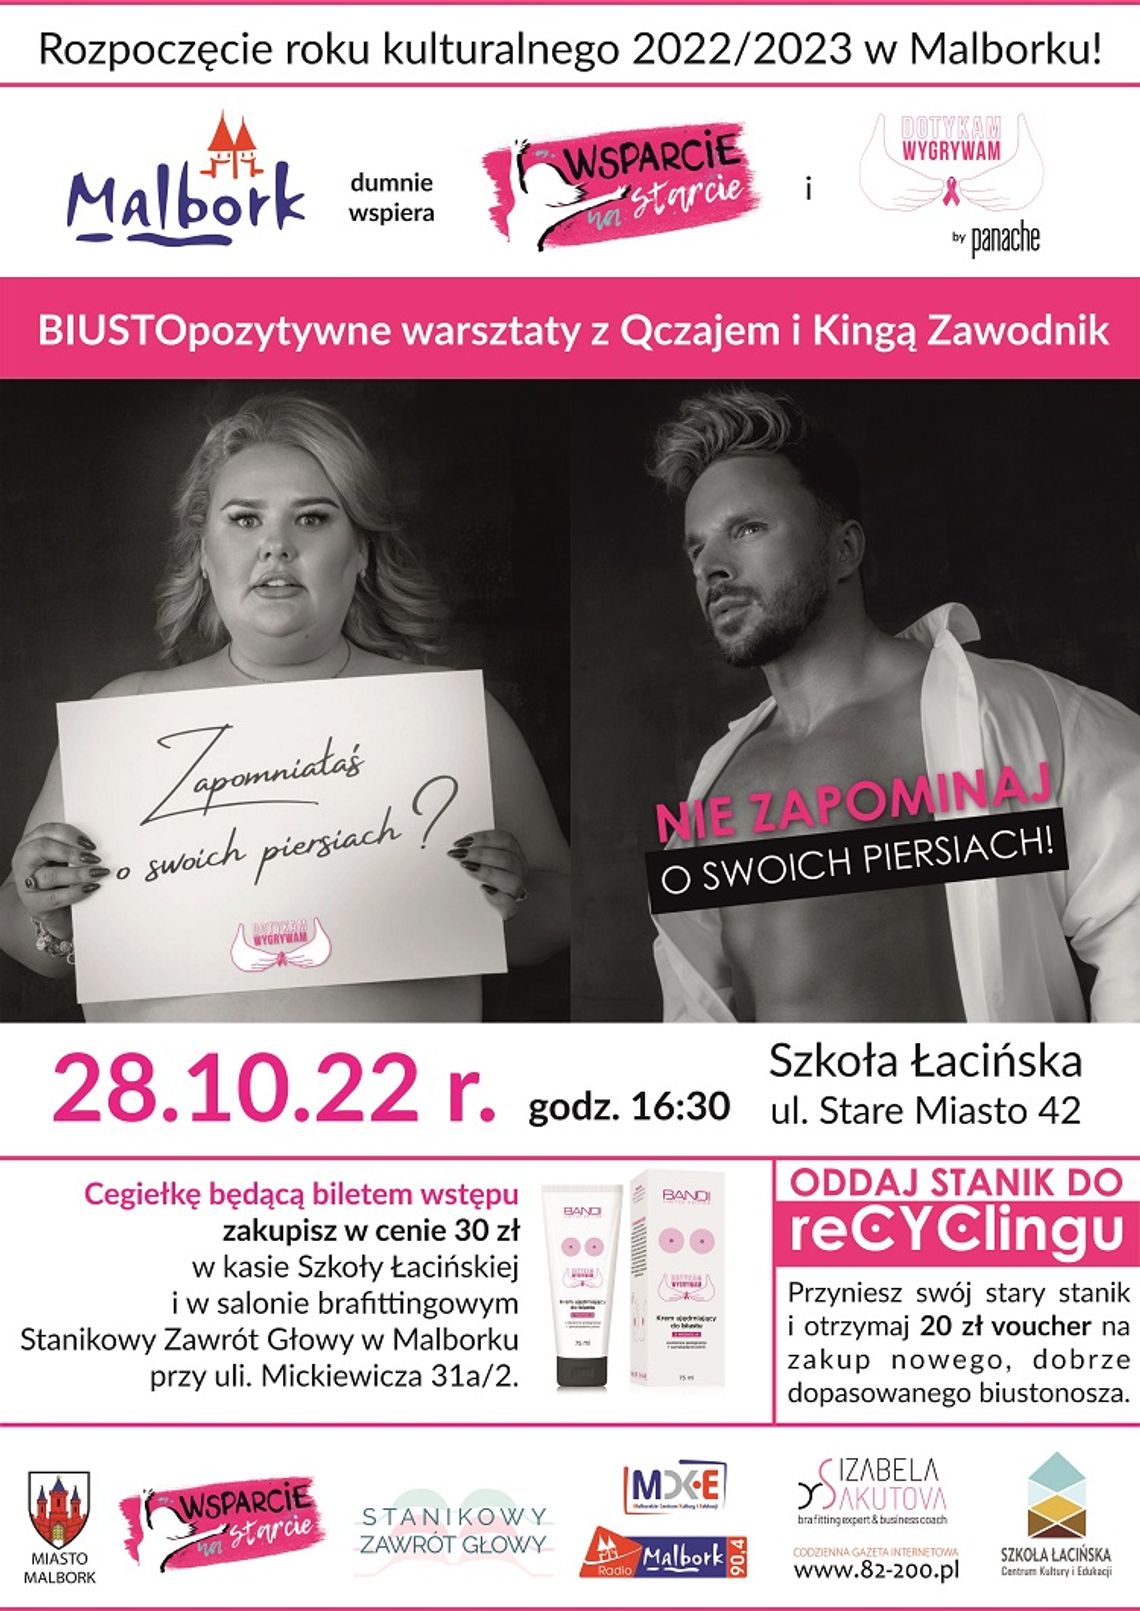 BIUSTOpozytywne warsztaty z Qczajem i Kingą Zawodnik rozpoczną rok kulturalny 2022/2023 w Malborku!  